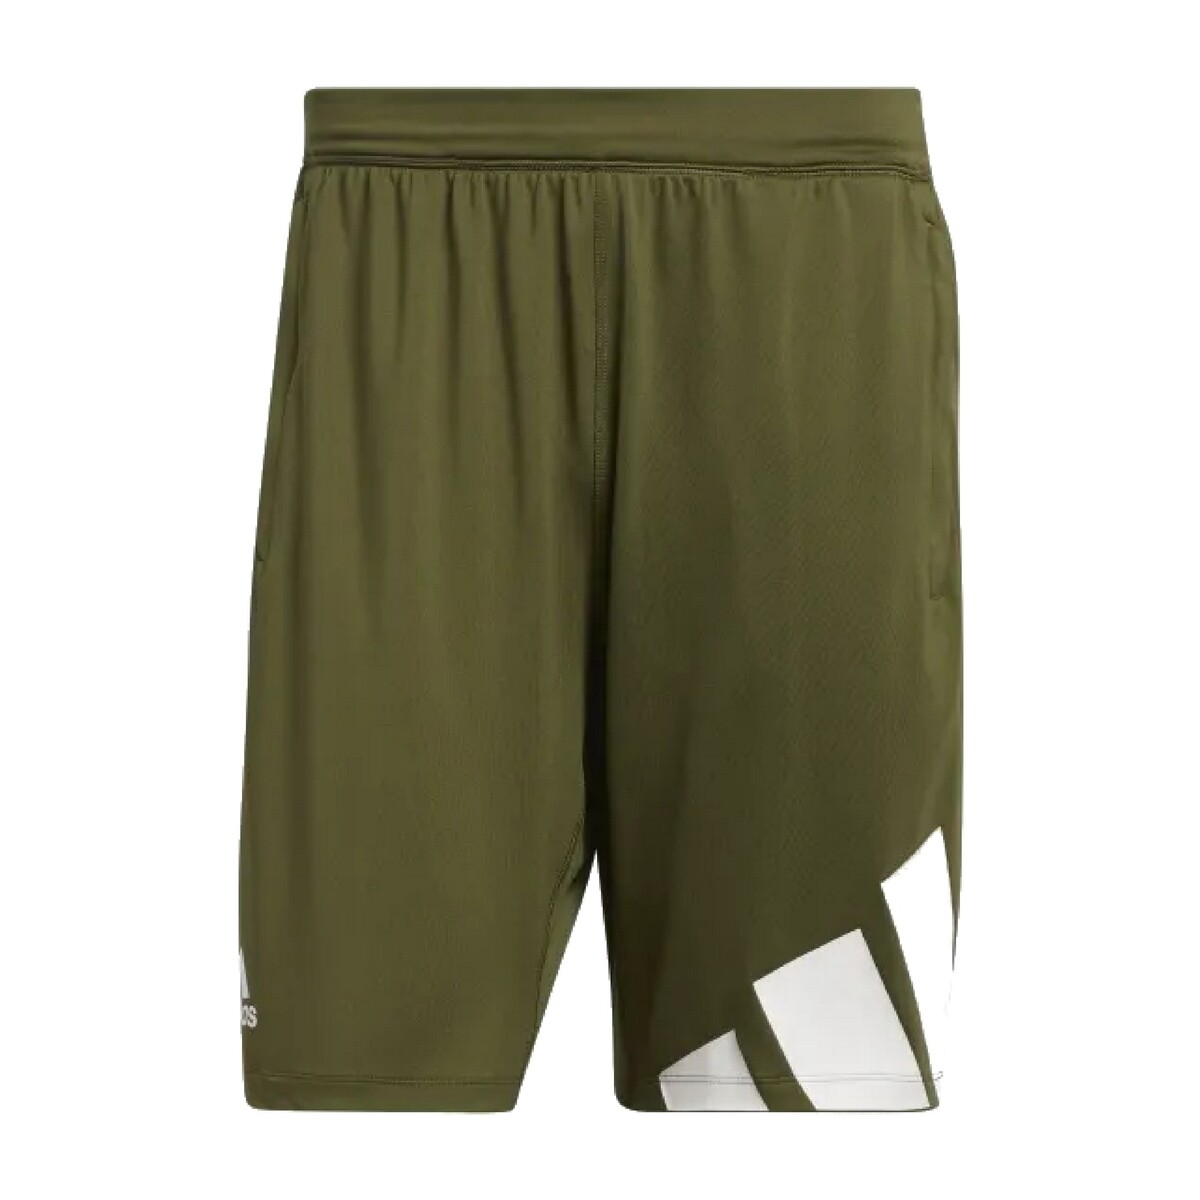 Kleidung Herren Shorts / Bermudas adidas Originals GL8971 Grün